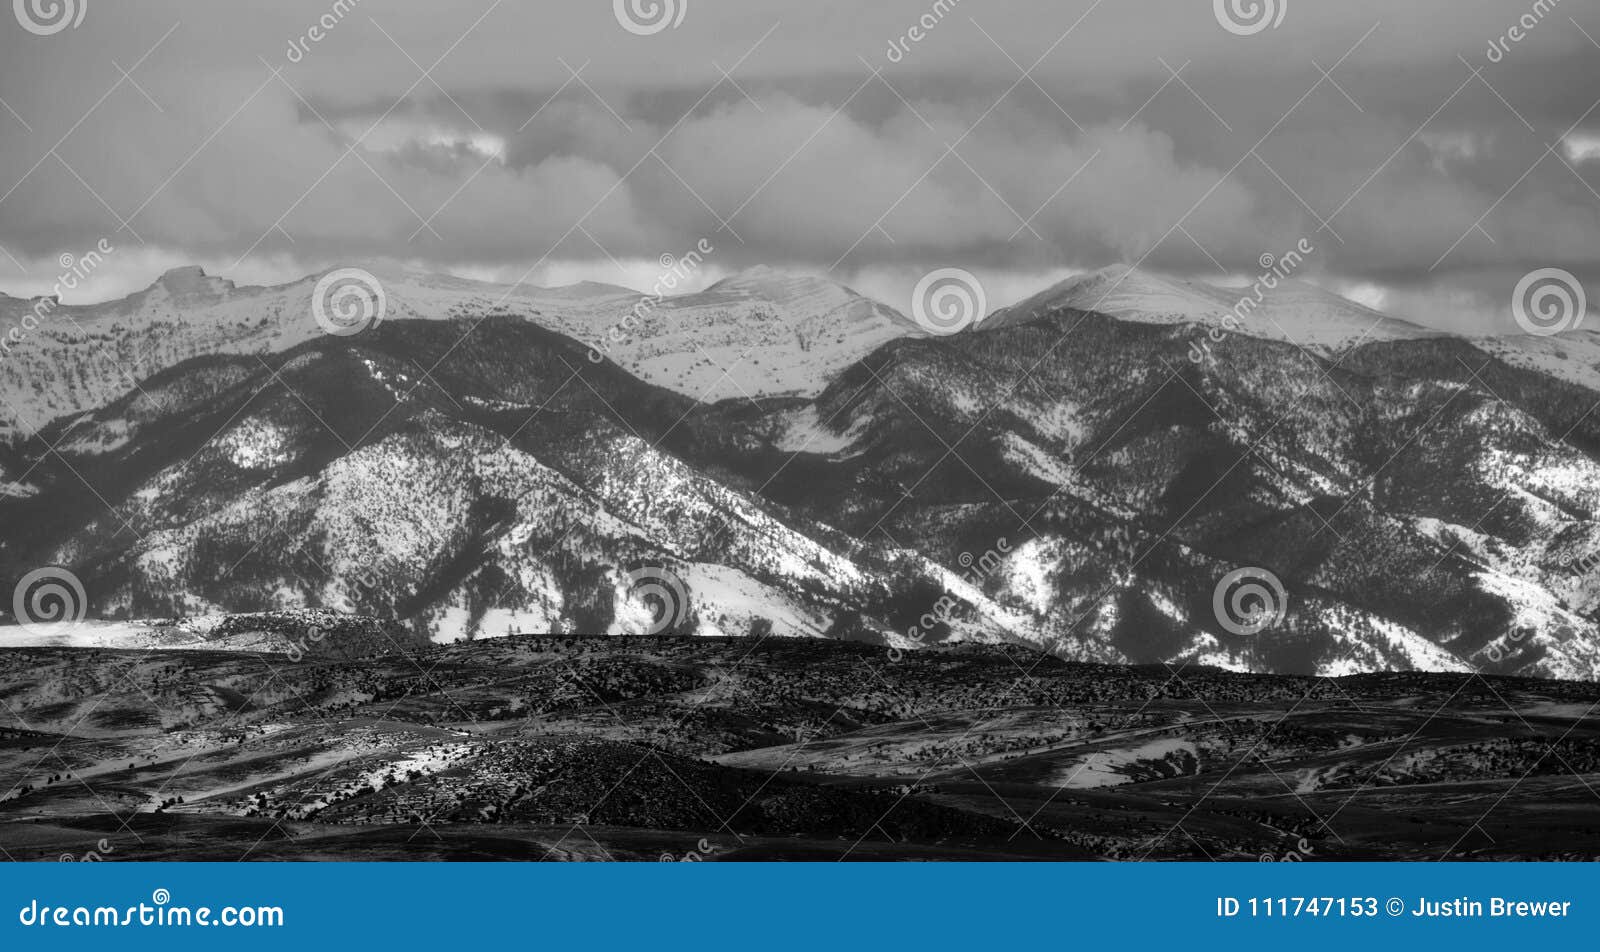 bridger mountains - black and white